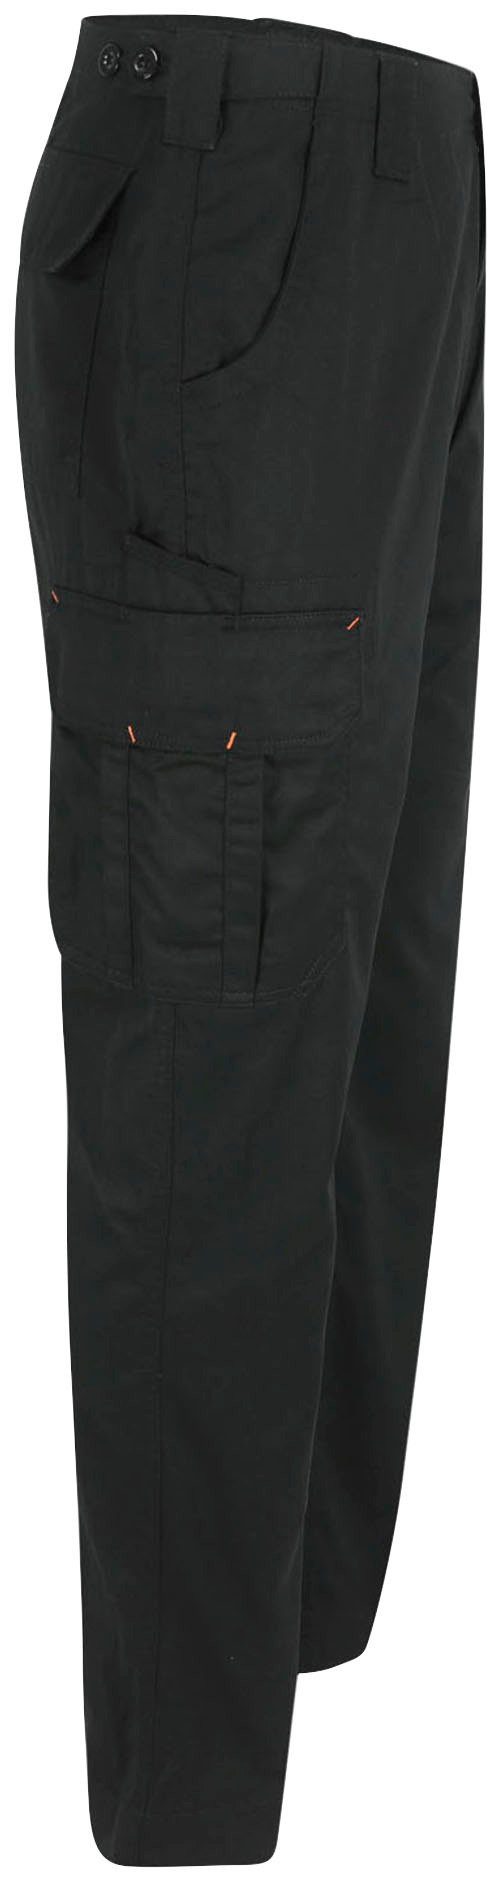 viele Arbeitshose leicht, einstellbarer schwarz Farben Hose Herock 7 Bund, Thor Taschen, Wasserabweisend,